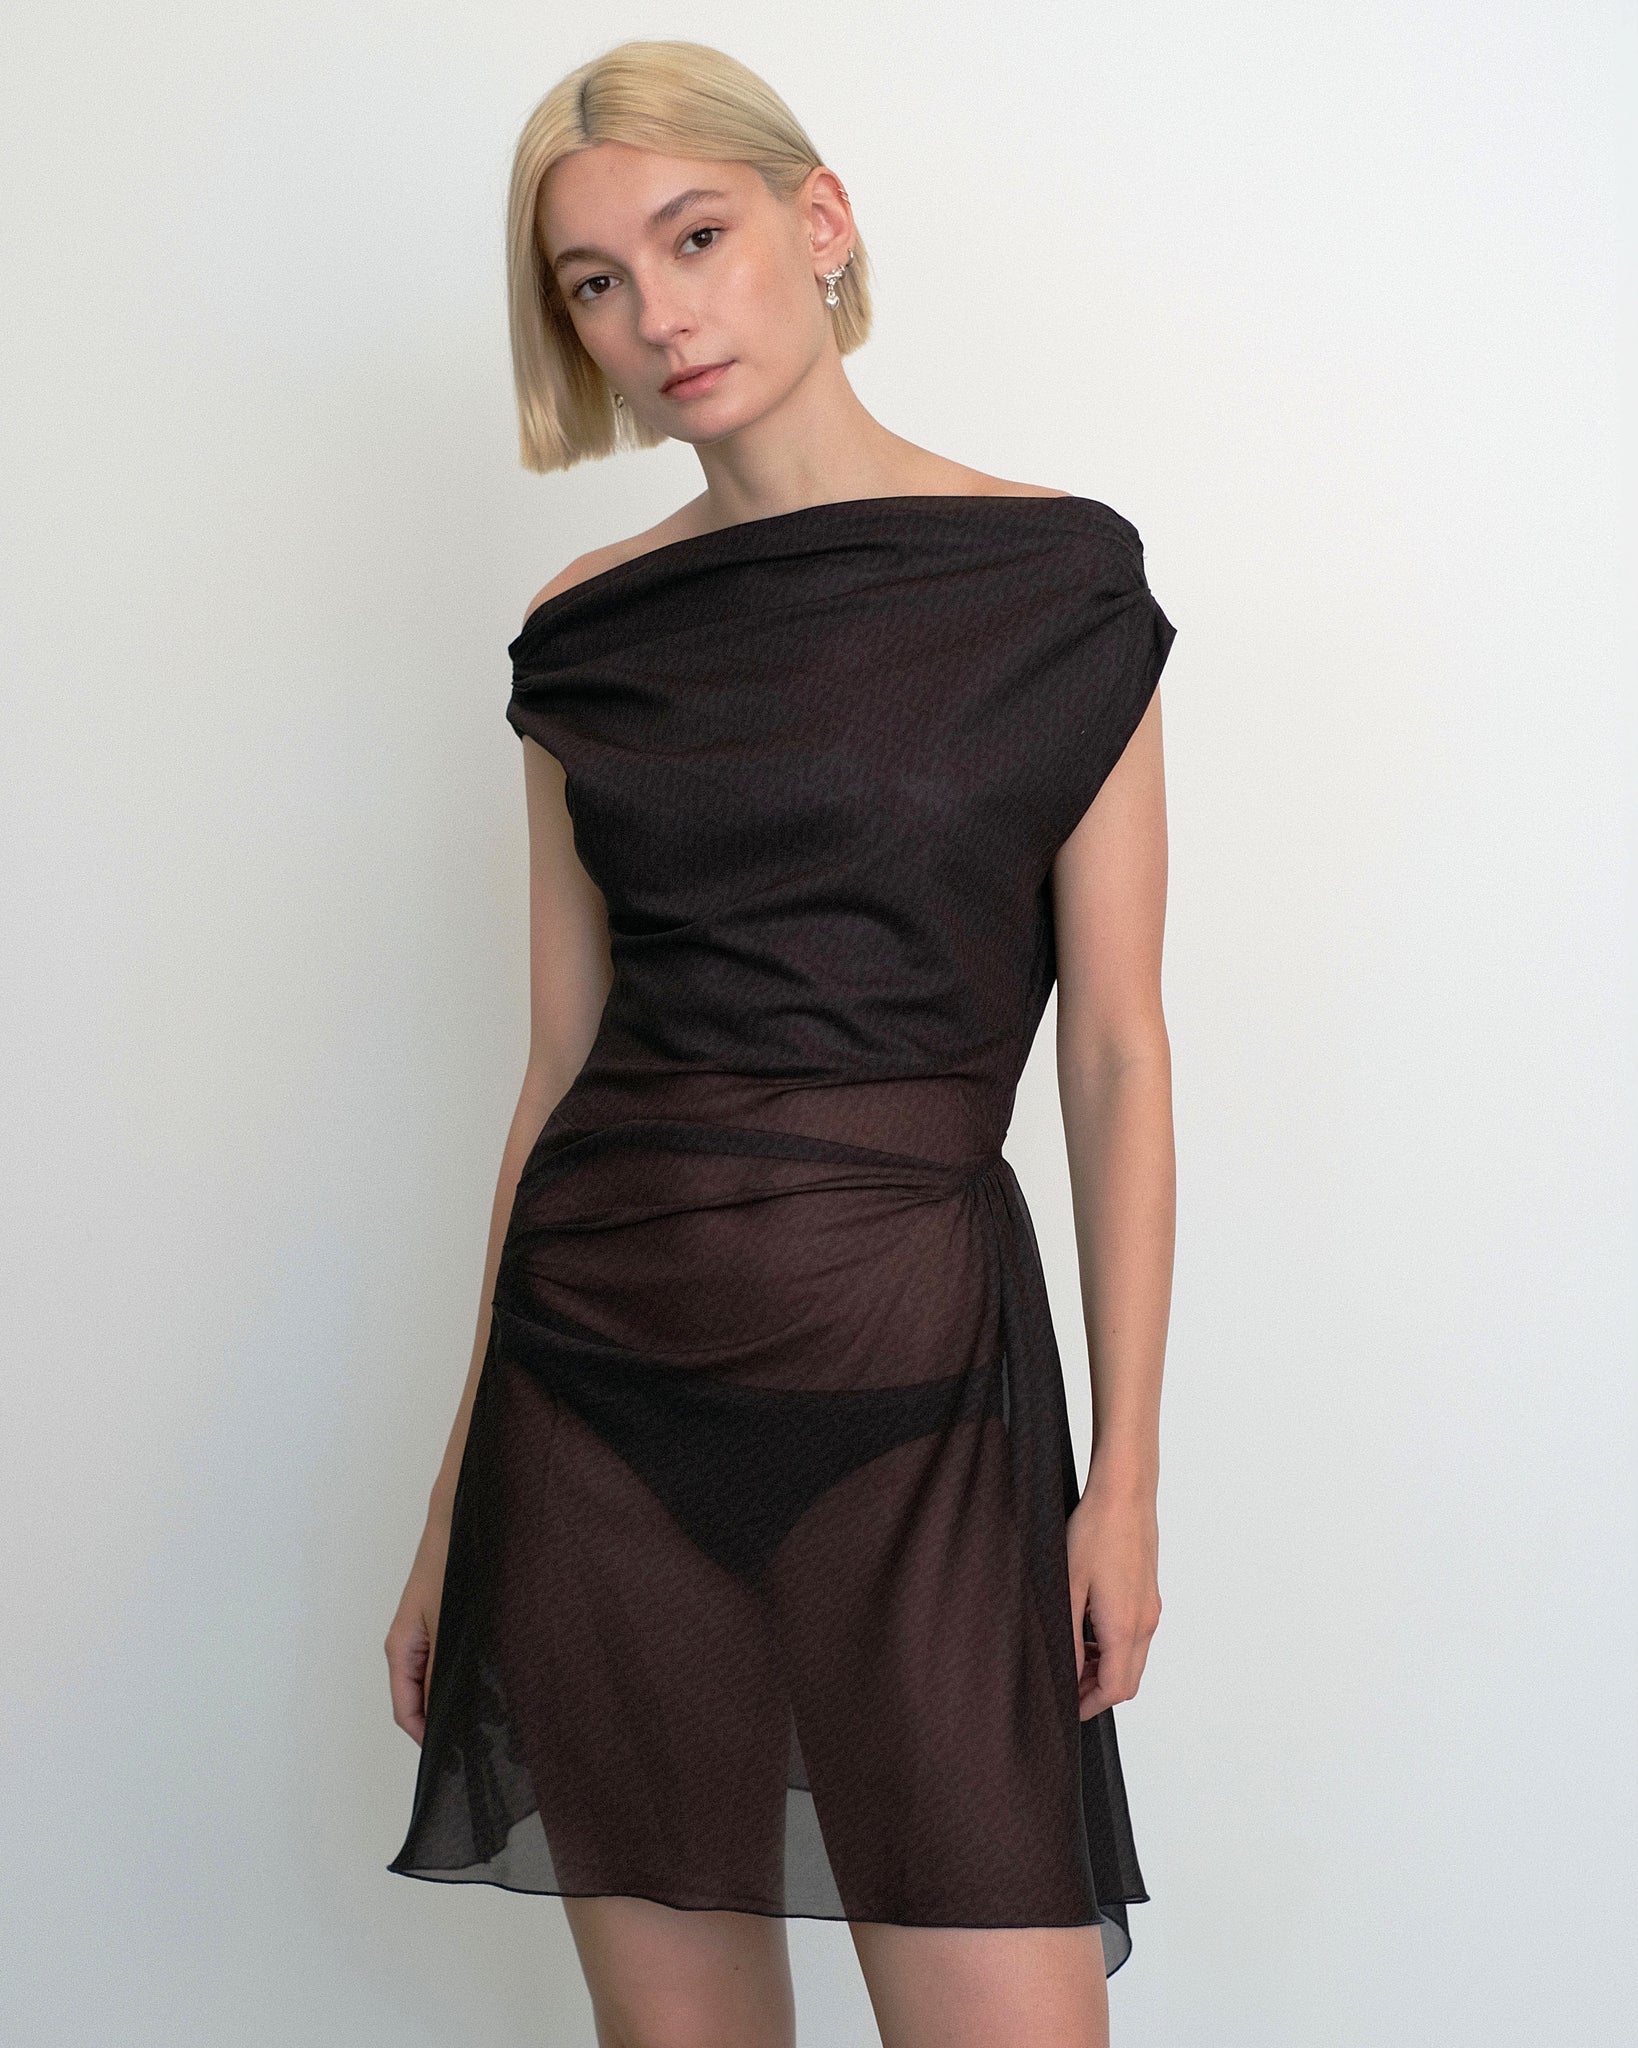 Model wearing Awen dress in sheer brown and black print from Una Hayde